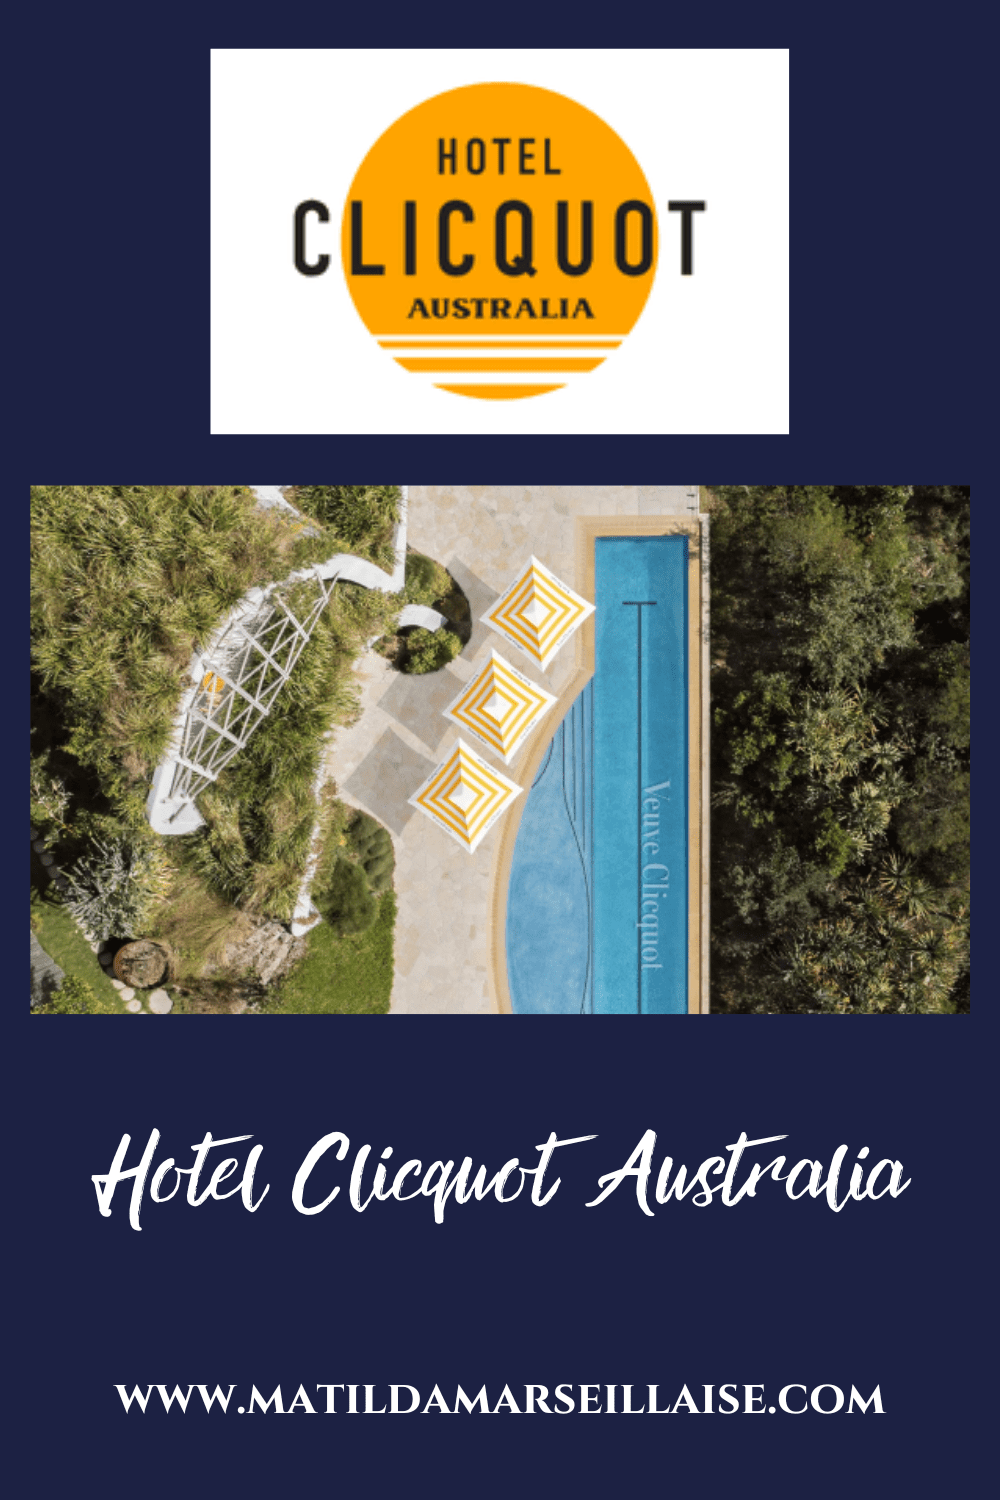 Hôtel Clicquot Australia est le seul hôtel boutique Veuve Clicquot au monde, mais il n’est ouvert que pour une courte durée